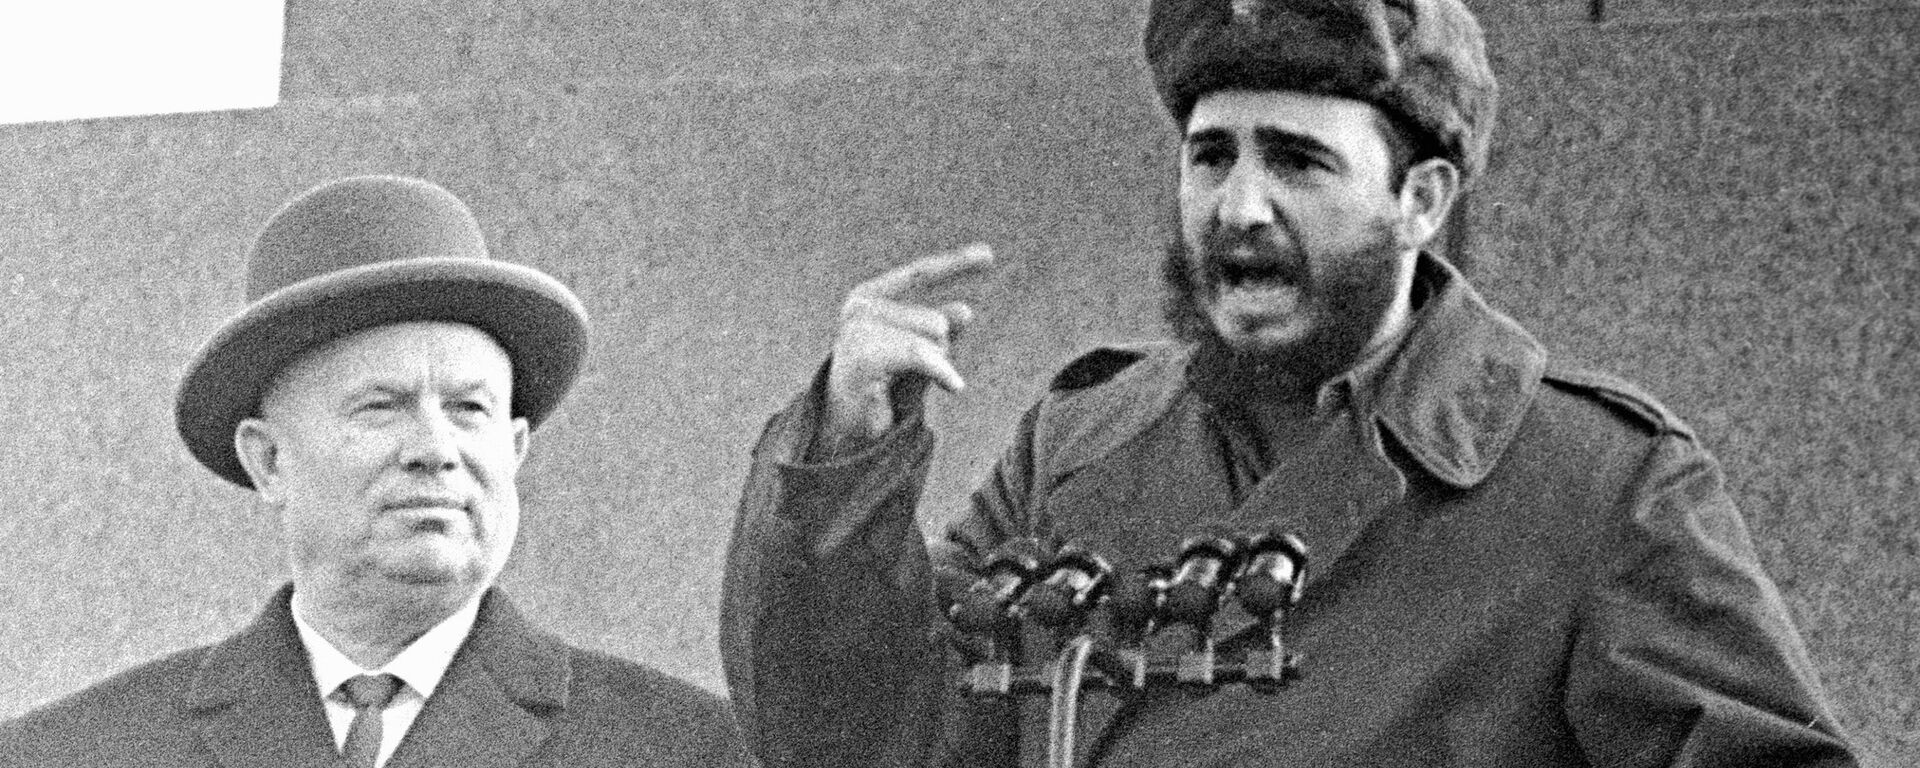 Nikita Jruschov, primer secretario del Comité Central del Partido Comunista de la Unión Soviética, junto a Fidel Castro, líder de la Revolución cubana, en la Plaza Roja de Moscú. - Sputnik Mundo, 1920, 18.10.2018